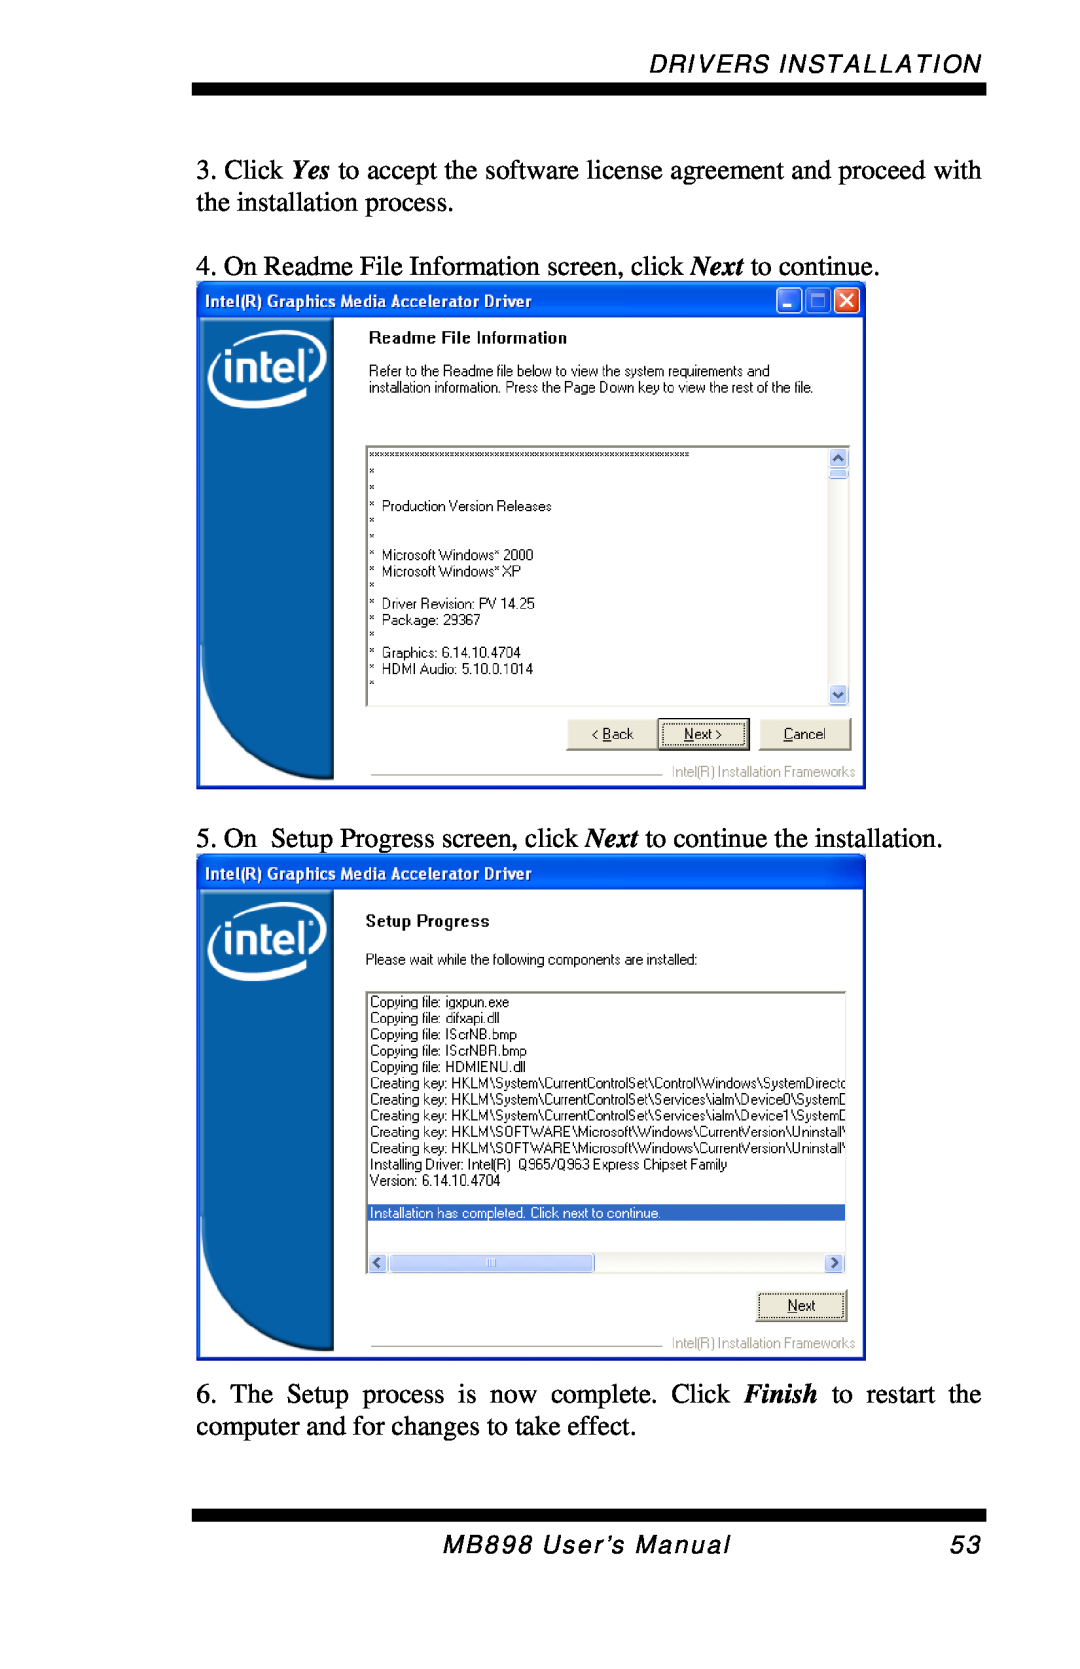 Intel MB898RF, MB898F user manual Drivers Installation, MB898 User’s Manual 